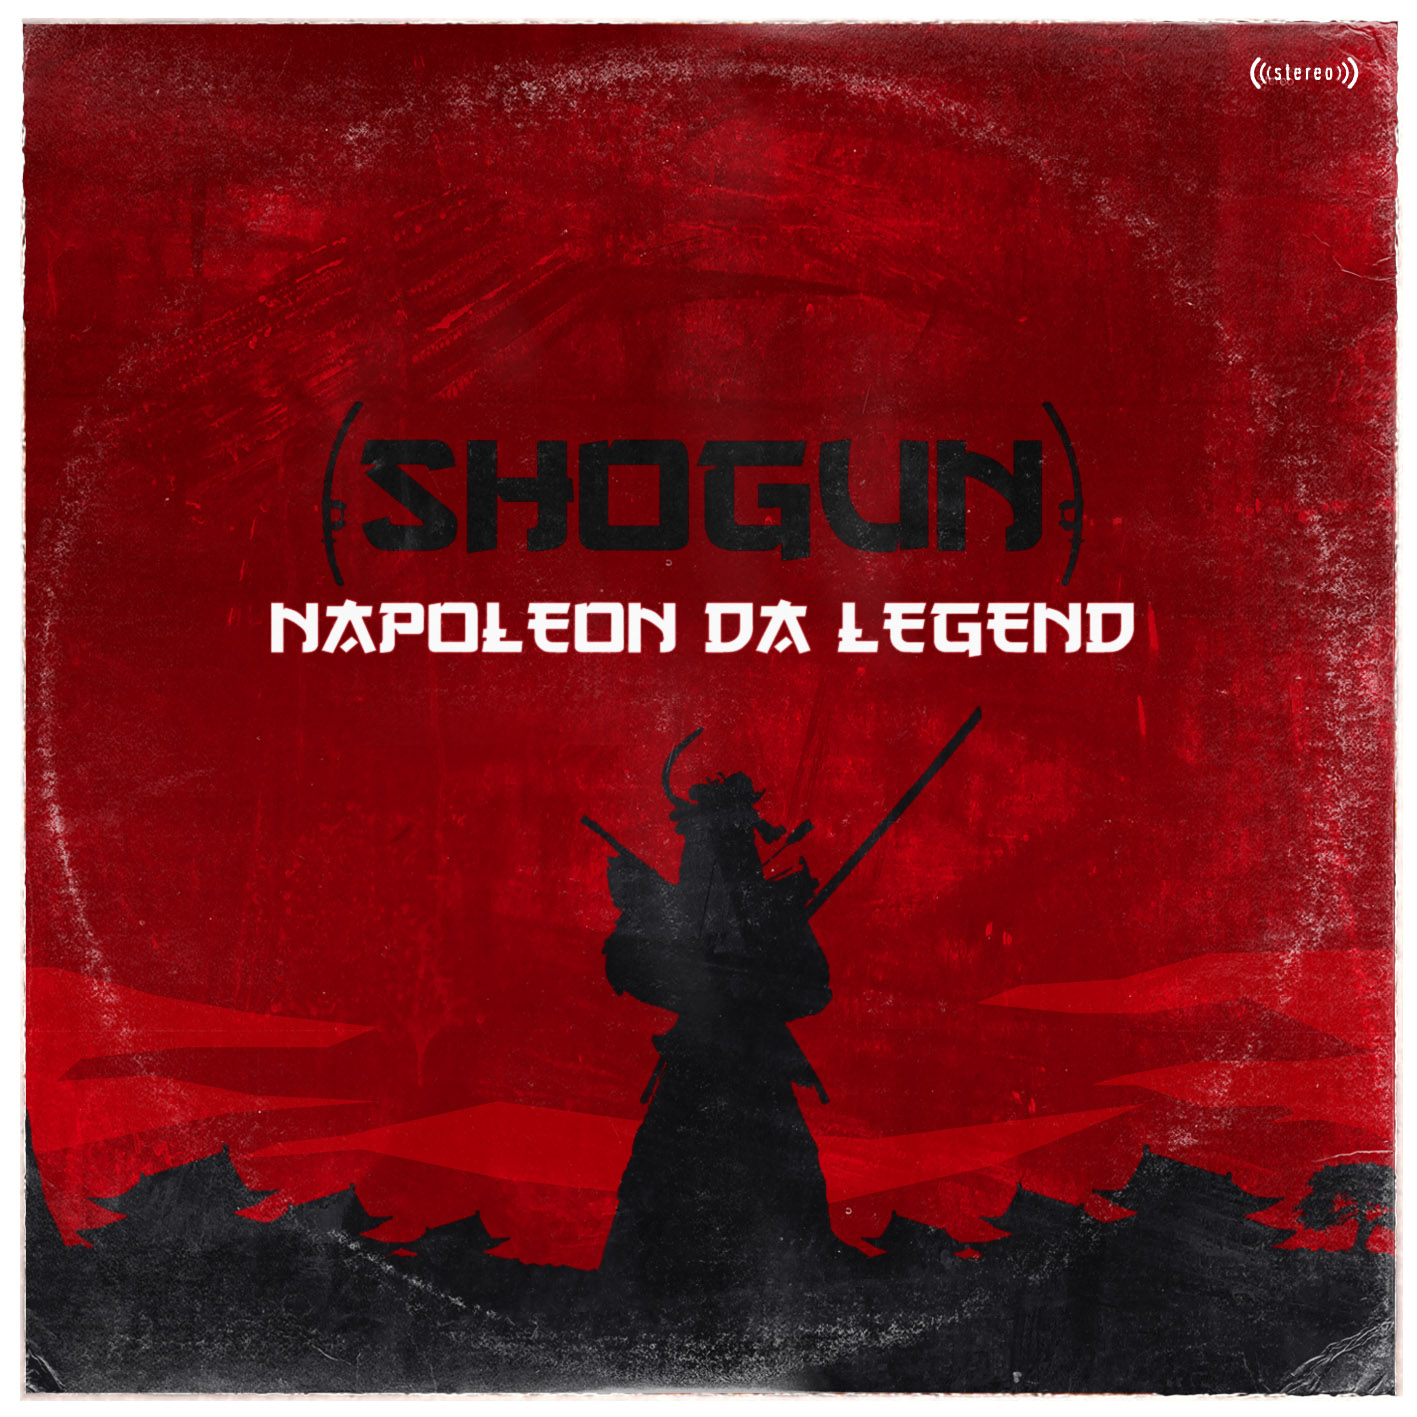 Shogun обложка альбома. Легенда о Наполеоне. Legend Music. Legend песня.